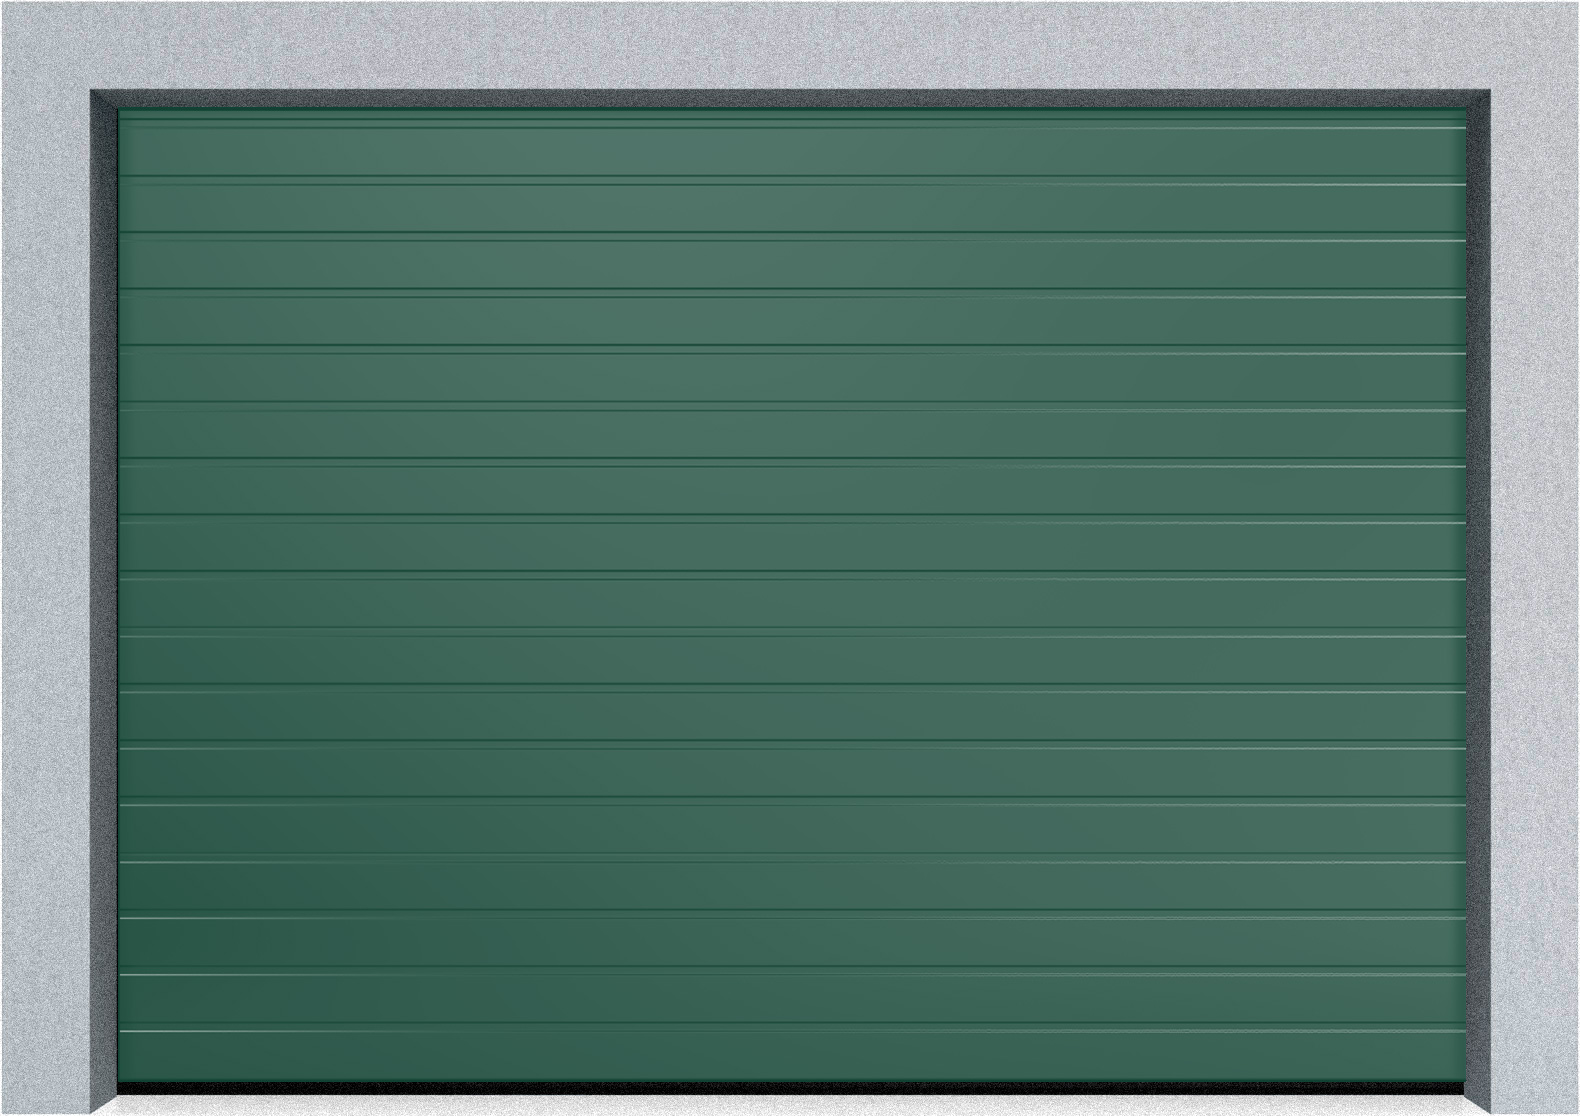  Автоматические секционные промышленные ворота DoorHan ISD ThermalPro 3600x2300 S-гофр, M-гофр, Микроволна стандартные цвета, фото 7 